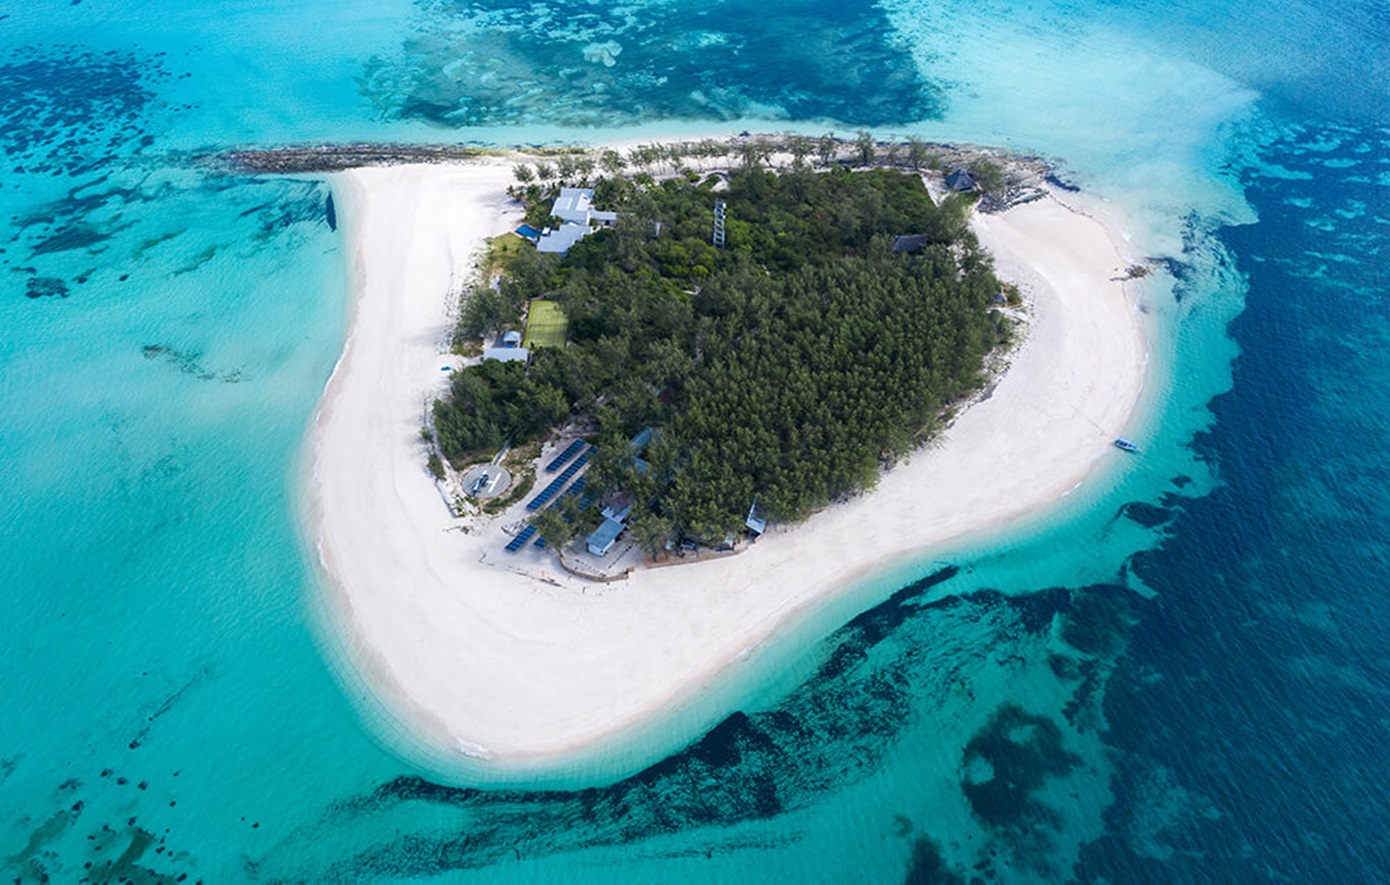 Πώς ένα ιδιωτικό νησί αξίας 31.000€ ανά διανυκτέρευση, εμπνευσμένο από τους Κένεντι, έγινε φάρος του βιώσιμου τουρισμού